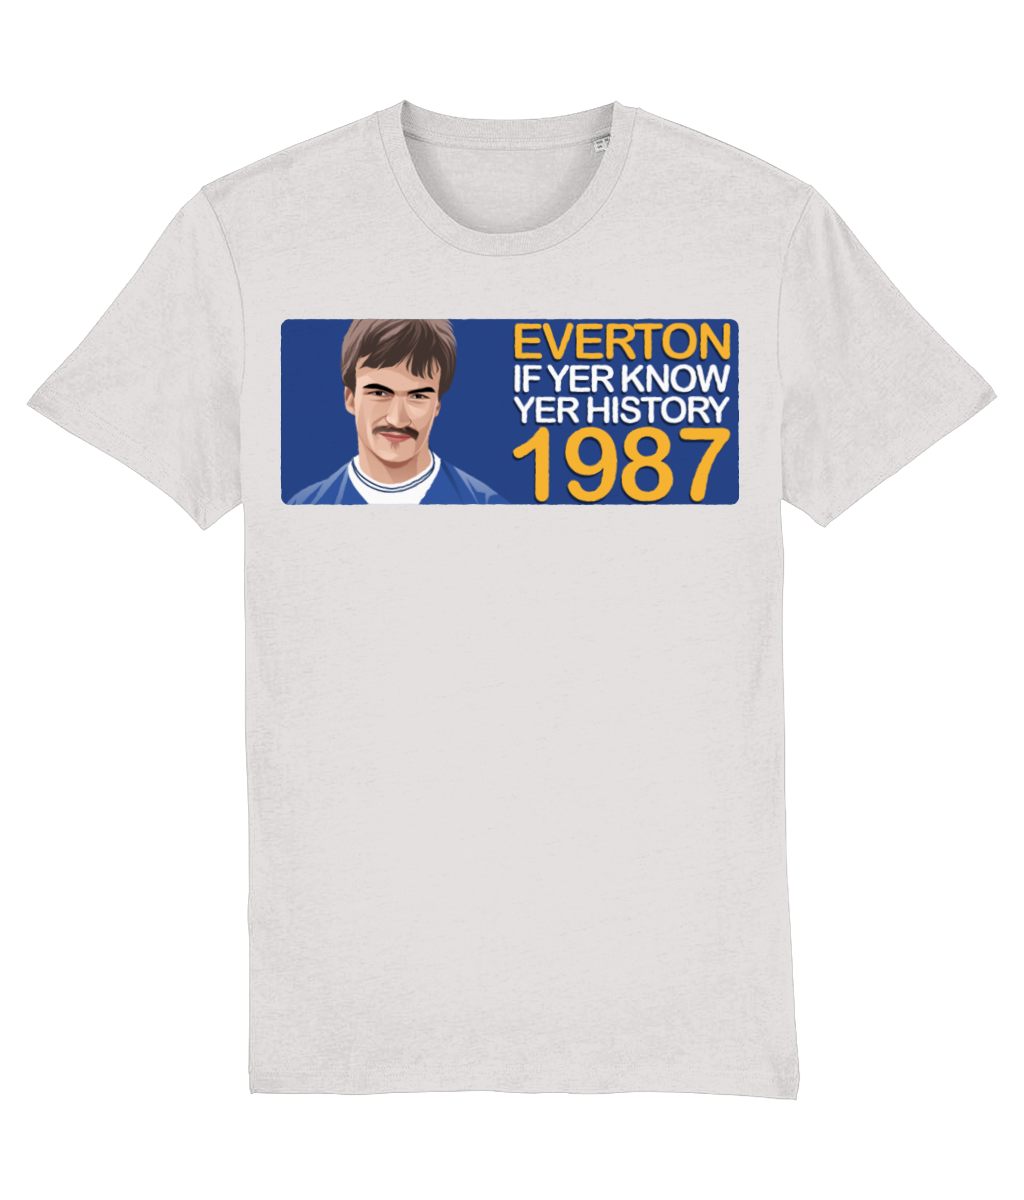 Everton 1987 Derek Mountfield If Yer Know Yer History Unisex T-Shirt Stanley/Stella Retrotext Cream Heather Grey XX-Small 